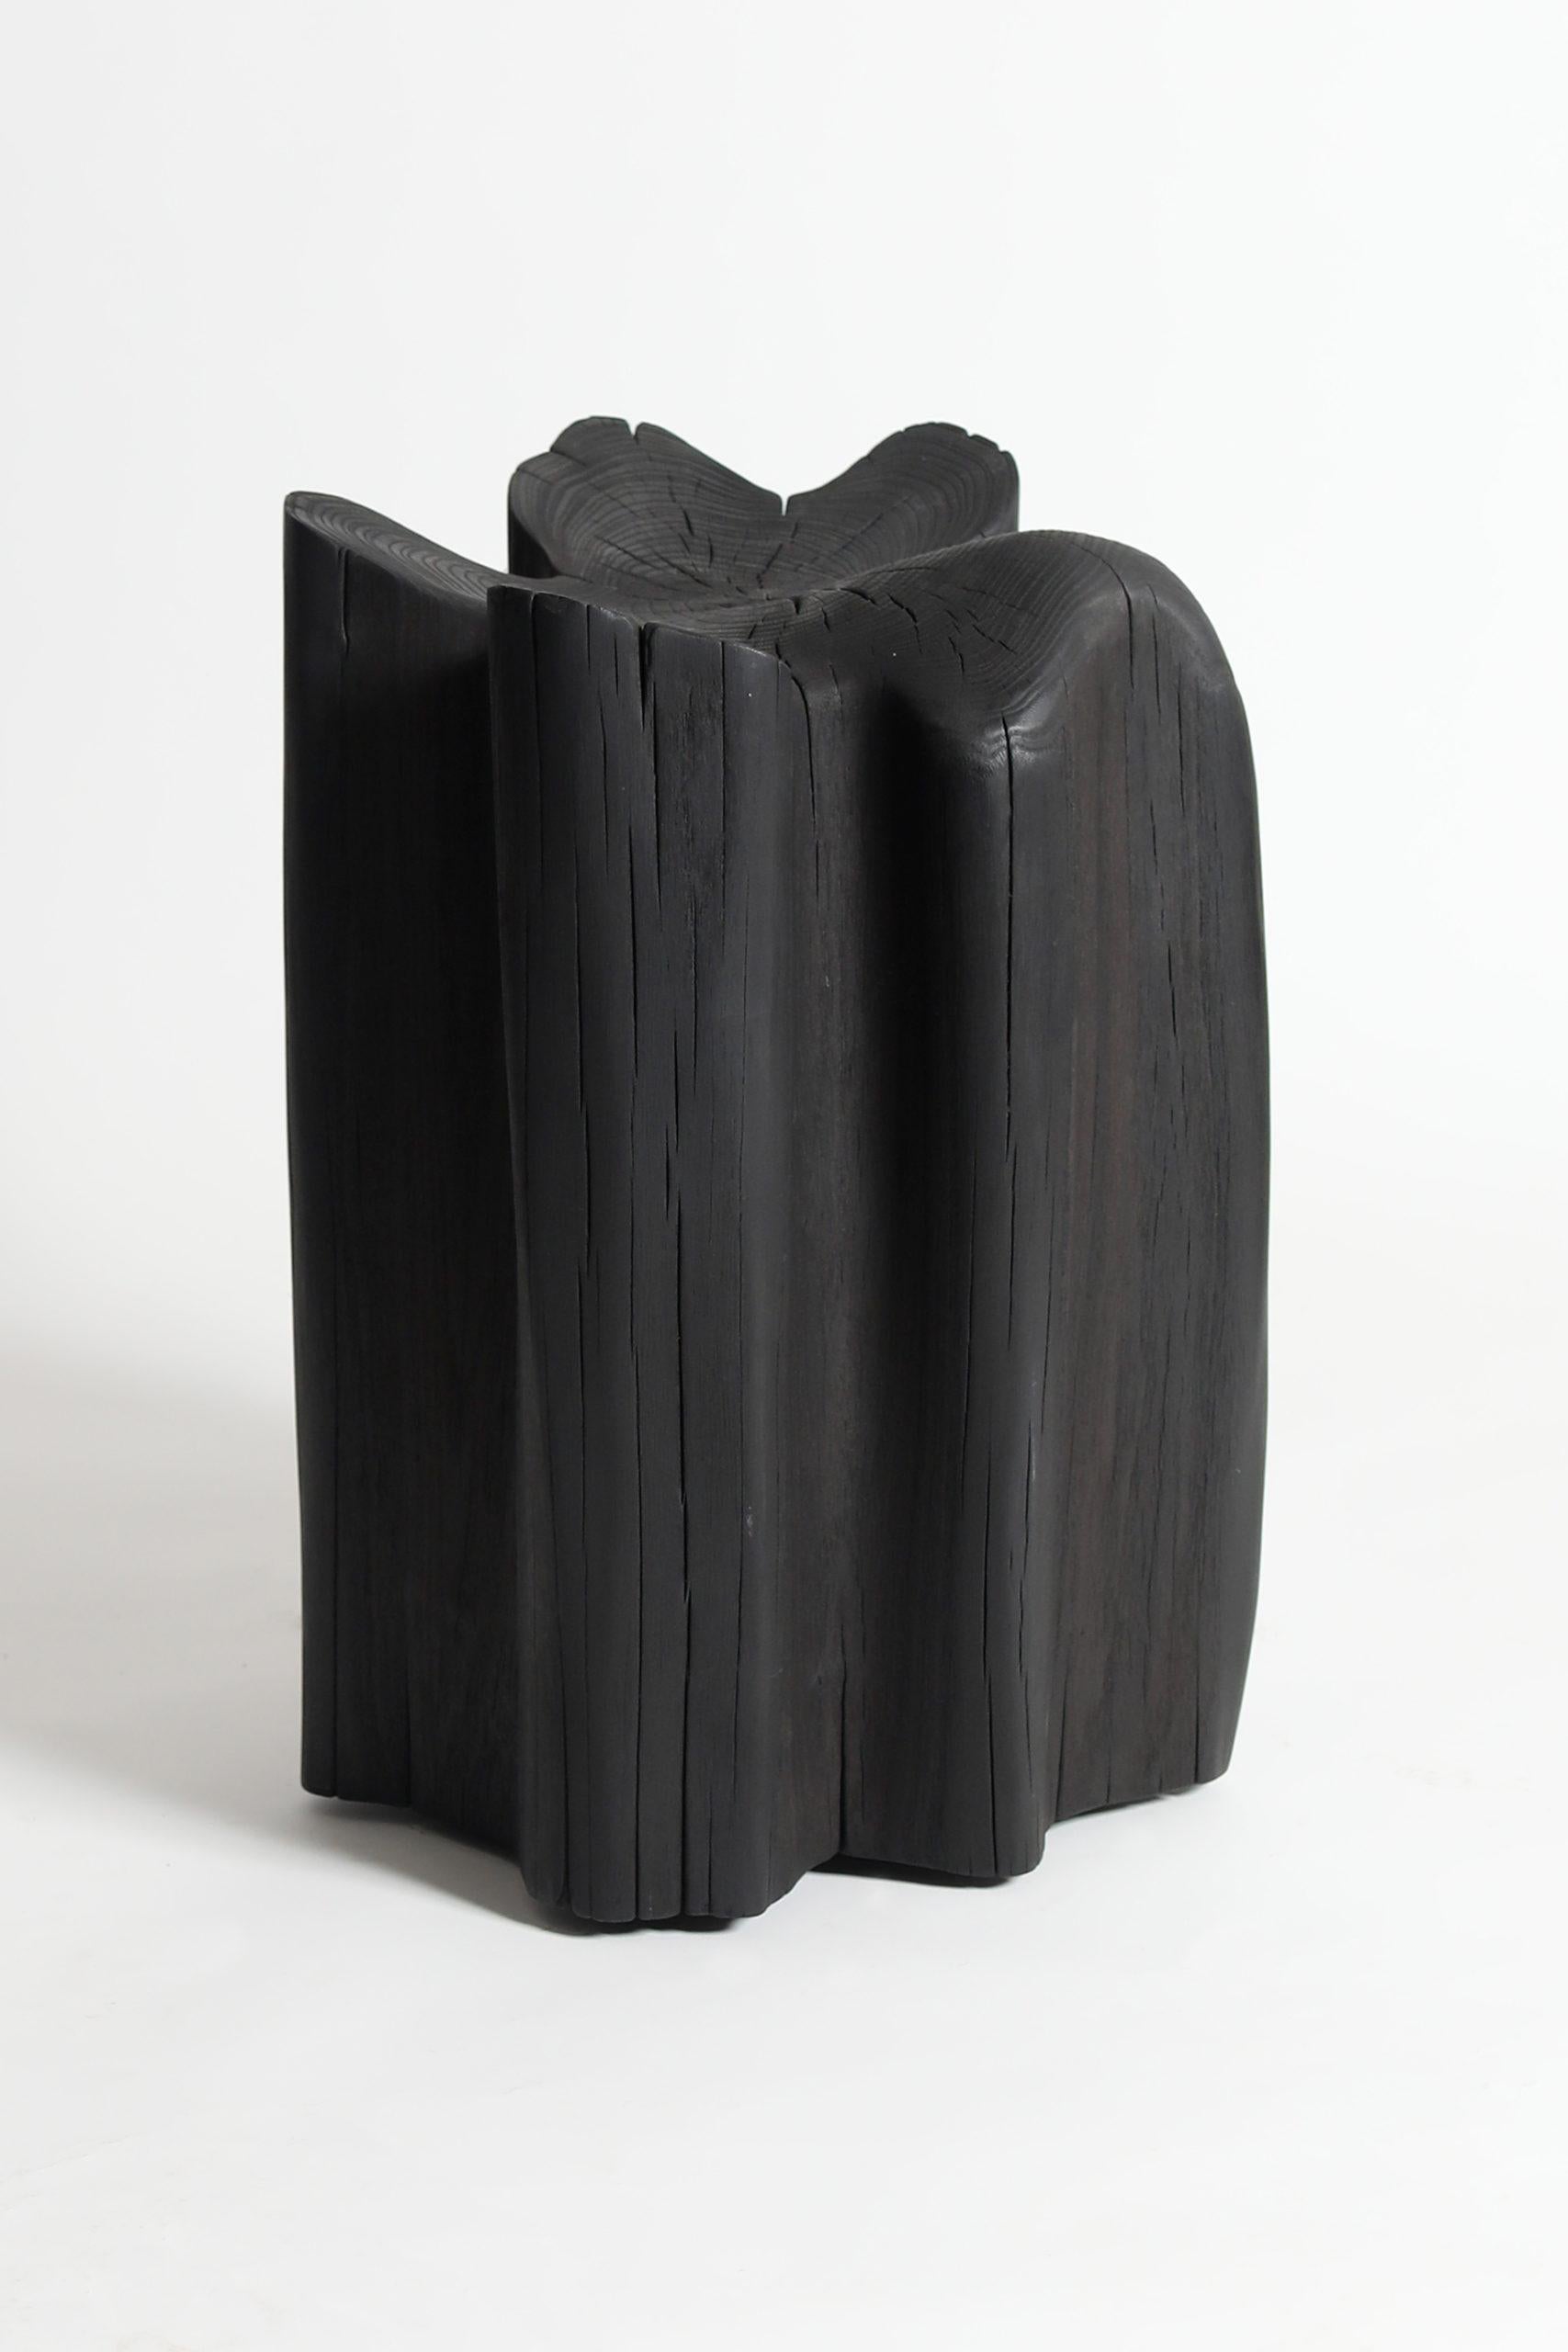 Tabouret contemporain en bois noir, morceau brûlé de Jesse Sanderson pour WDSTCK

Design/One Jess Sanderson
MATERIAL : Bois d'acacia brûlé
Caractéristiques : Roues invisibles
Dimensions : hauteur 47 cm

Fabriqué à la main aux Pays-Bas

À la